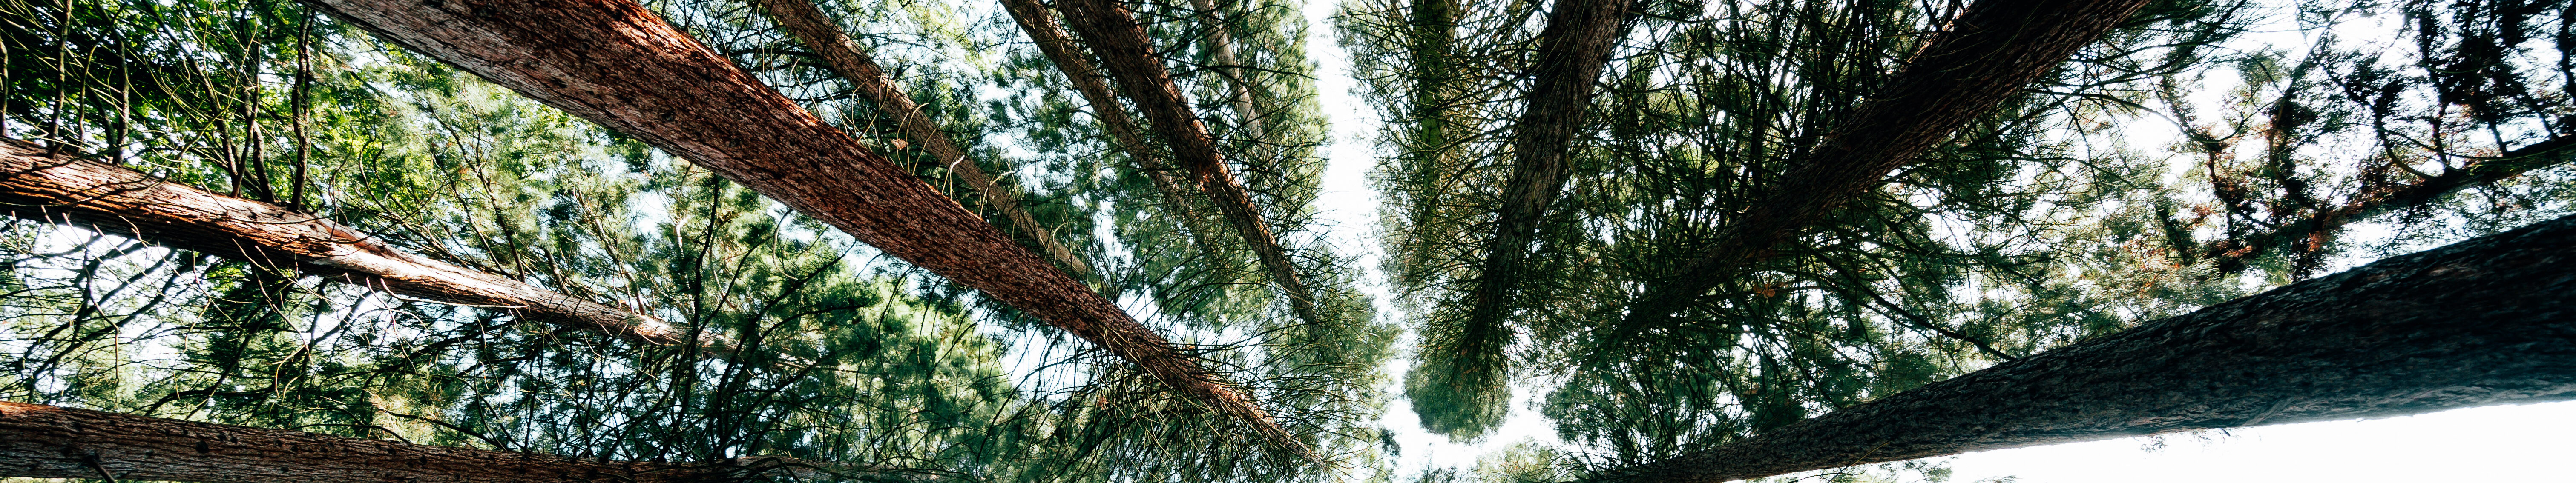 Sequoiafarm Kaldenkirchen Niederrhein © Johannes Höhn